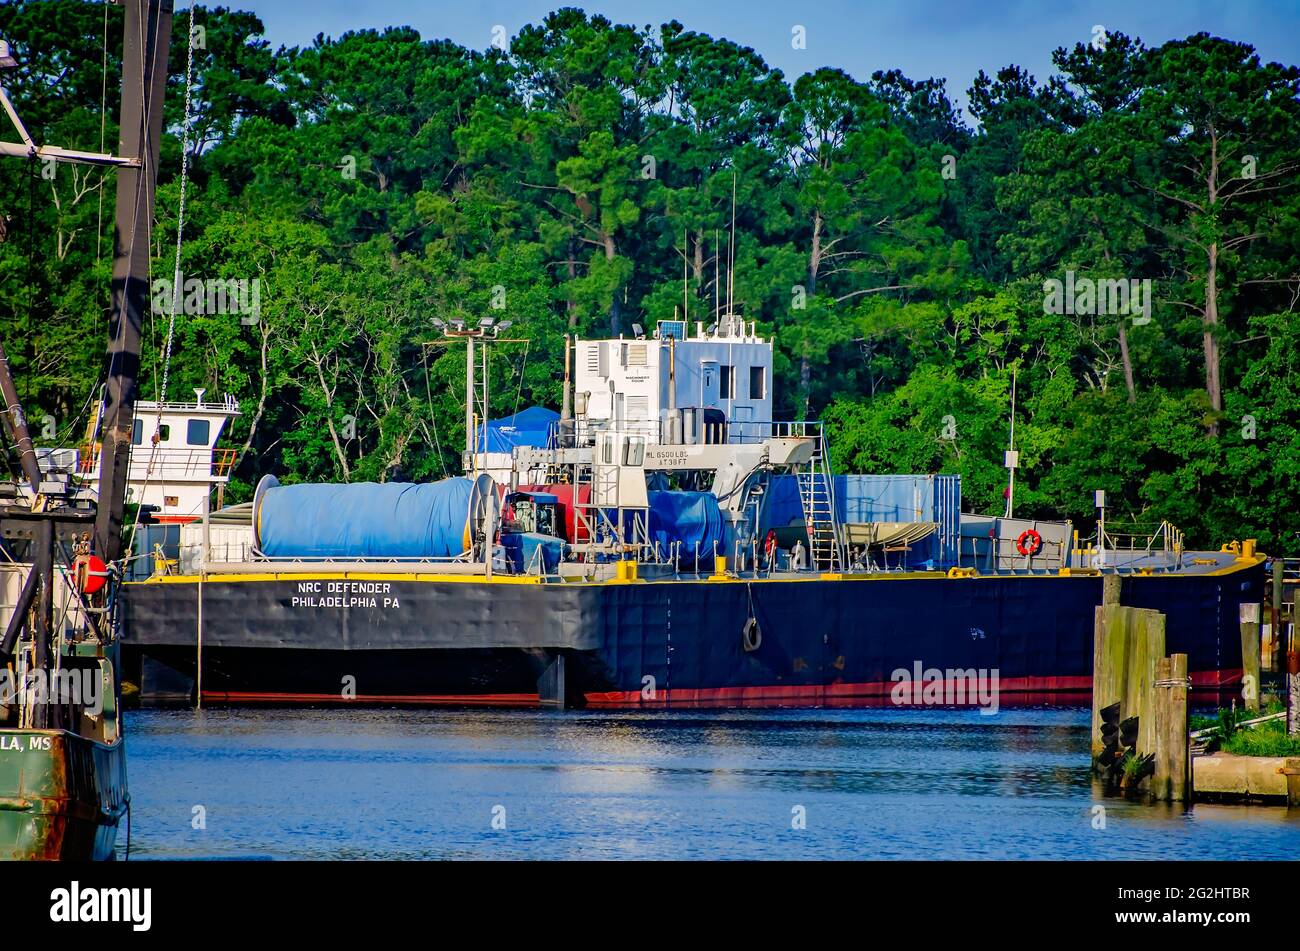 Le défenseur du CNRC est amarré à Bayou la Batre, en Alabama. La barge-citerne, propriété de la National Response Corporation, est utilisée pour les déversements d'hydrocarbures marins. Banque D'Images